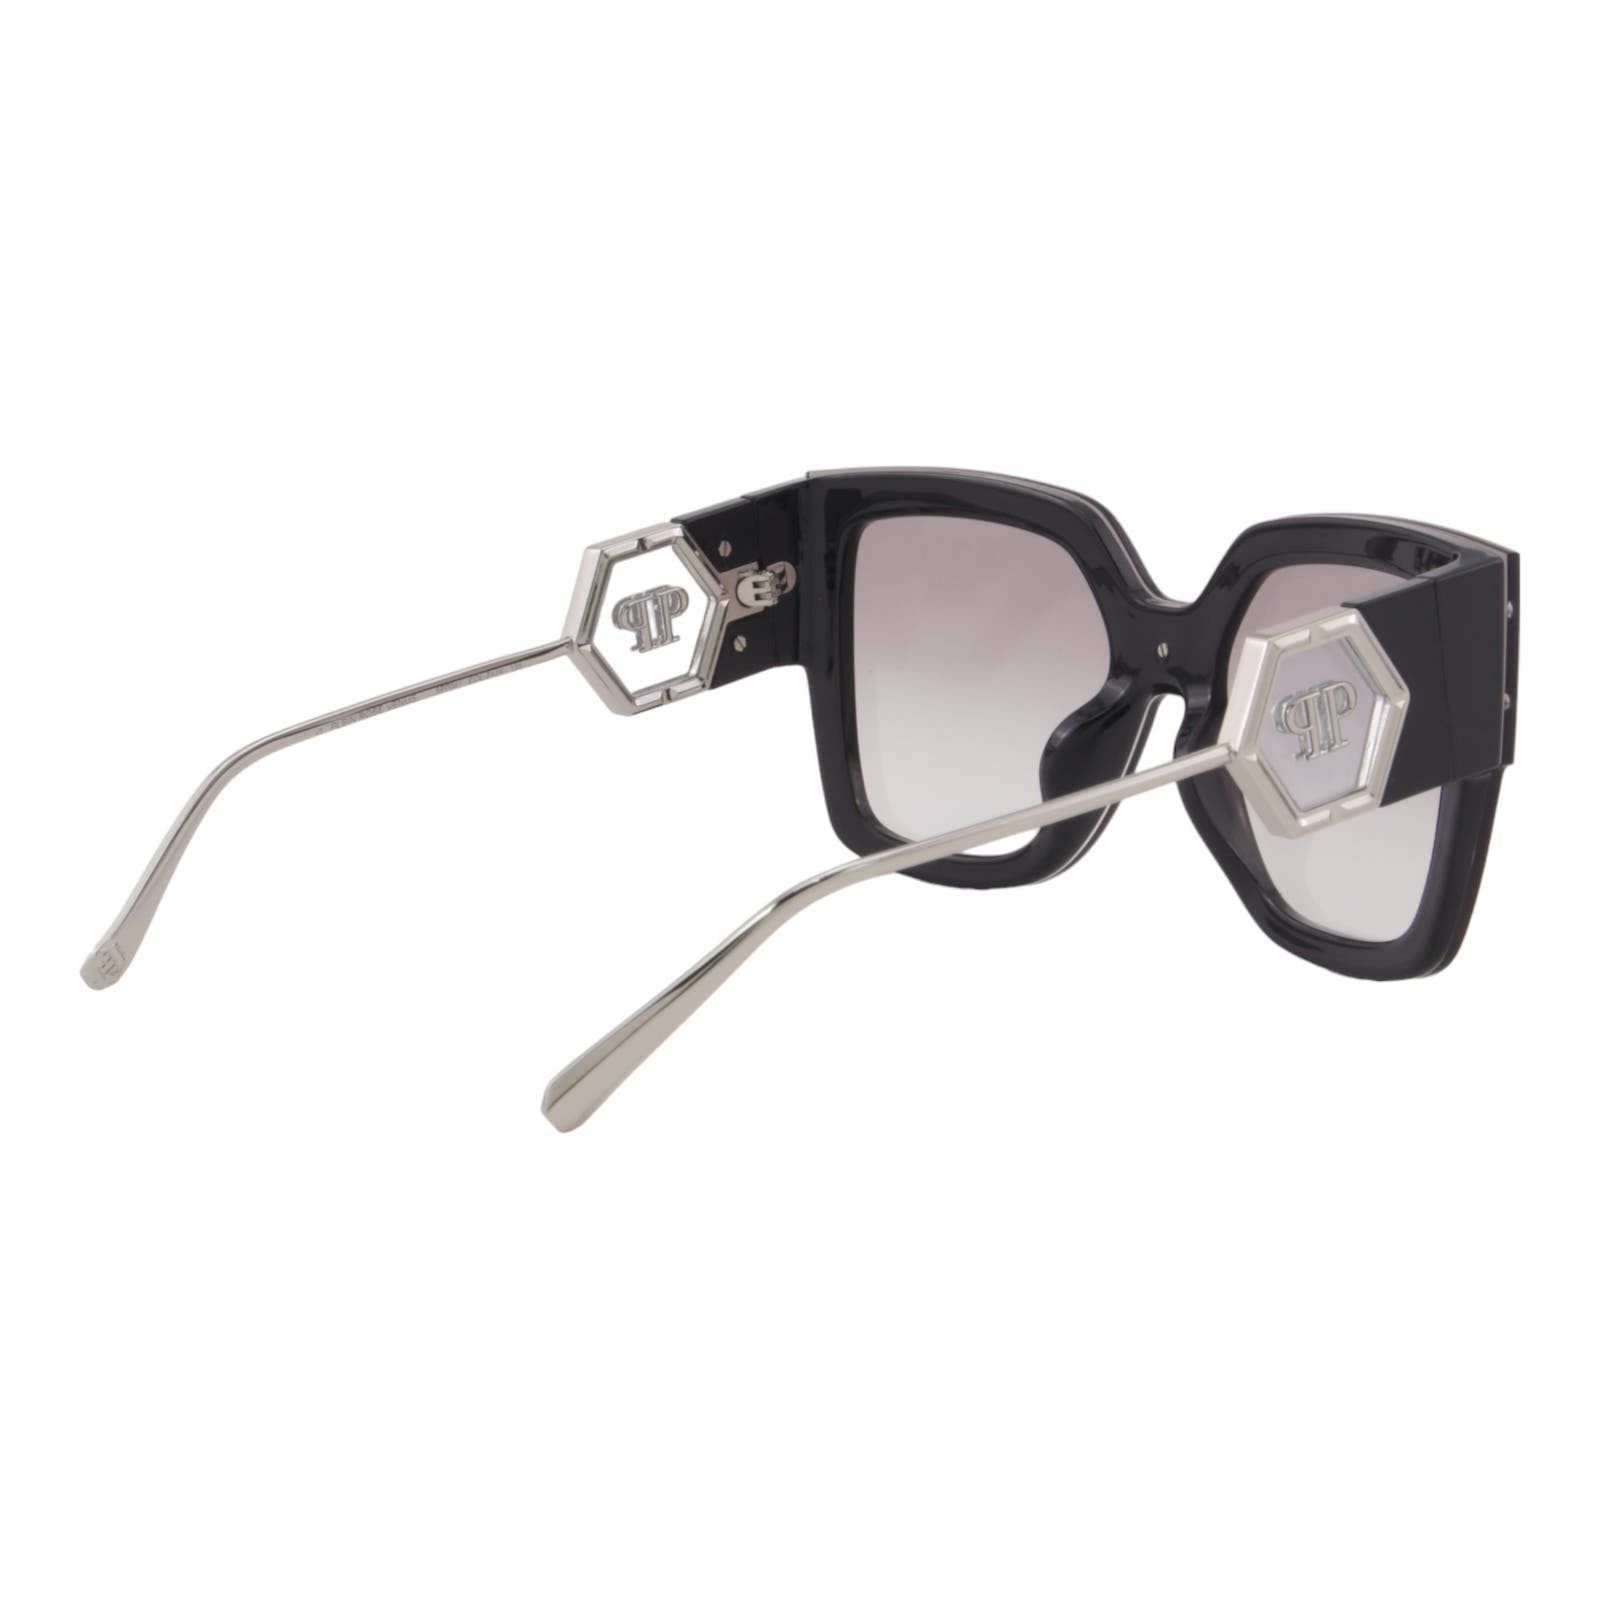 Women Designer Sunglasses SPP041M-Z42X Oversized Square Frame Gray Lens